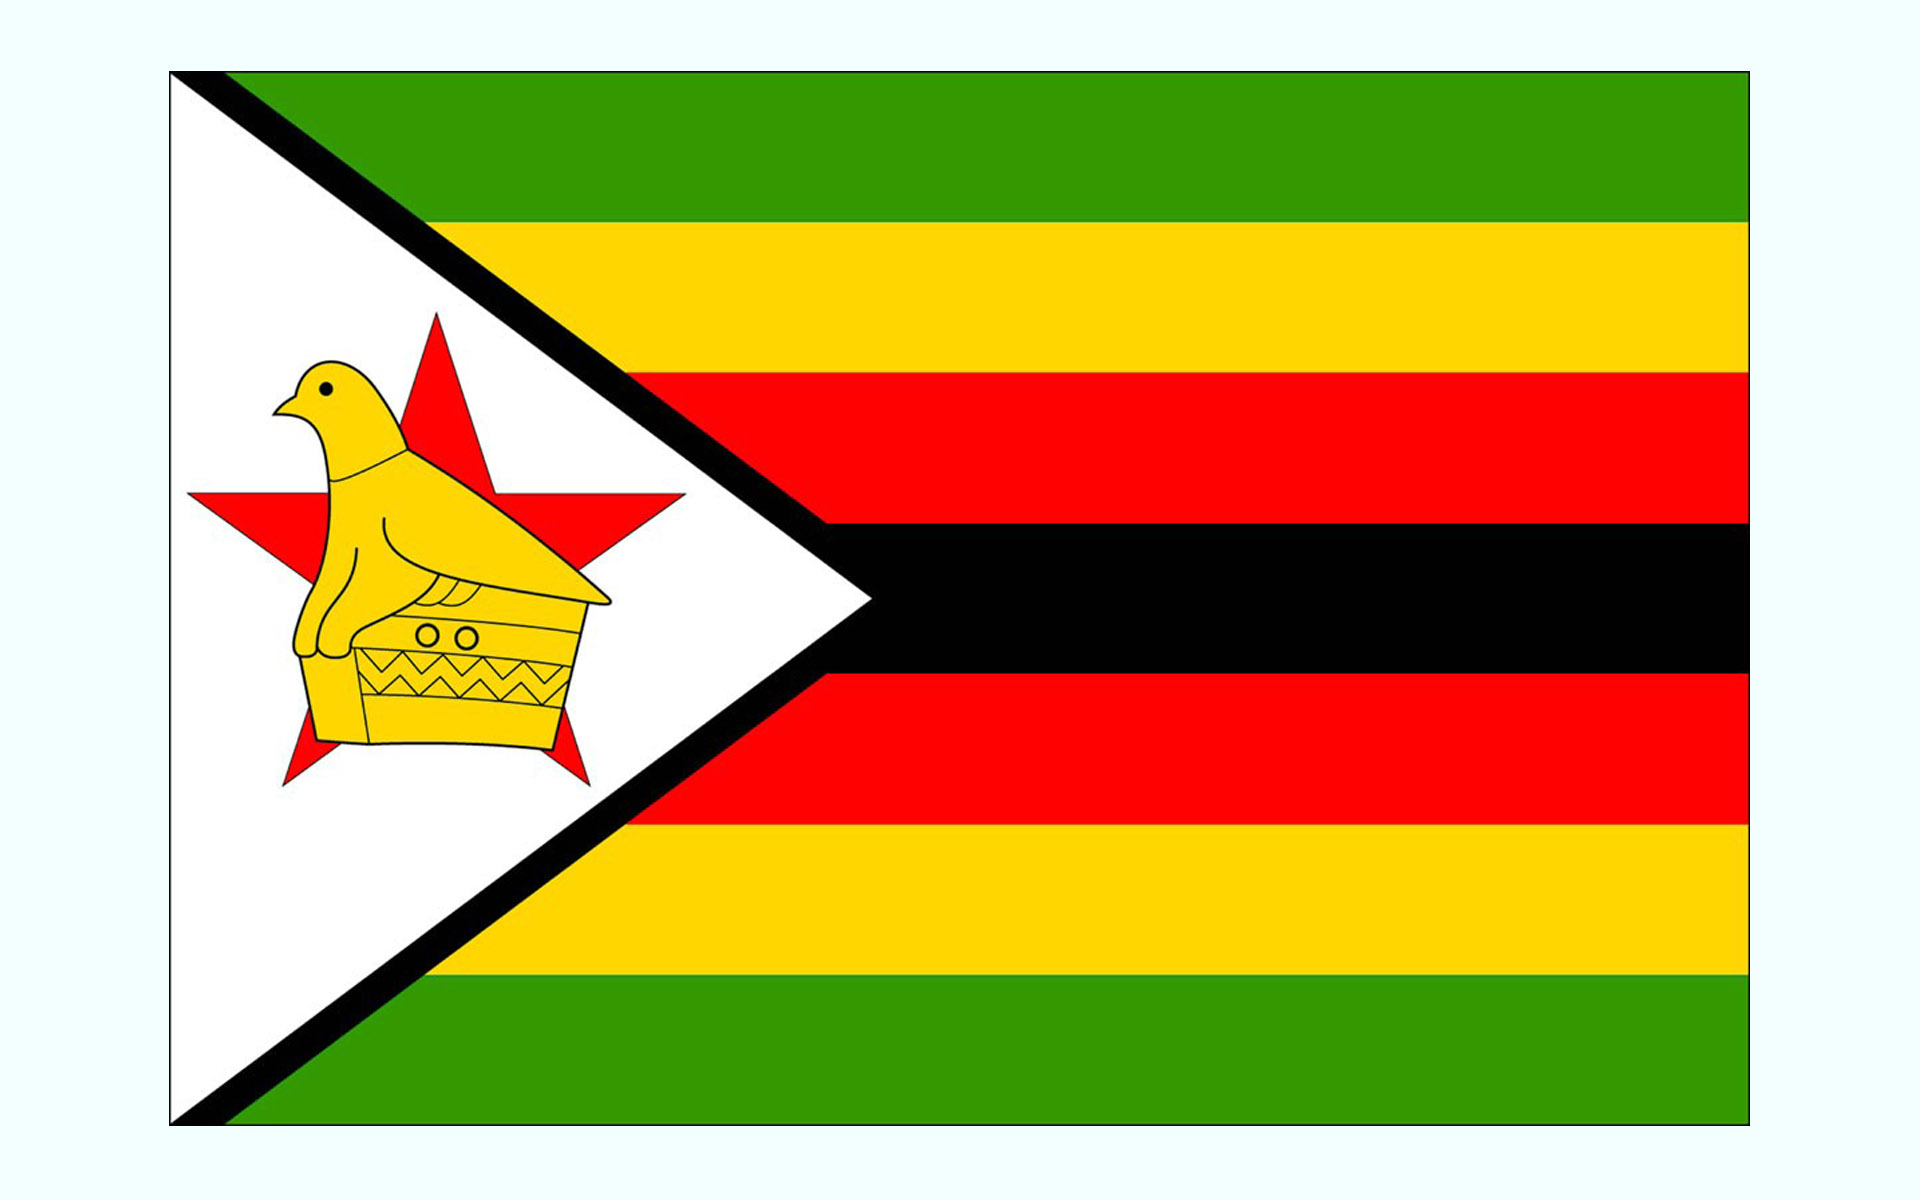 عکس پرچم کشور زیمبابوه